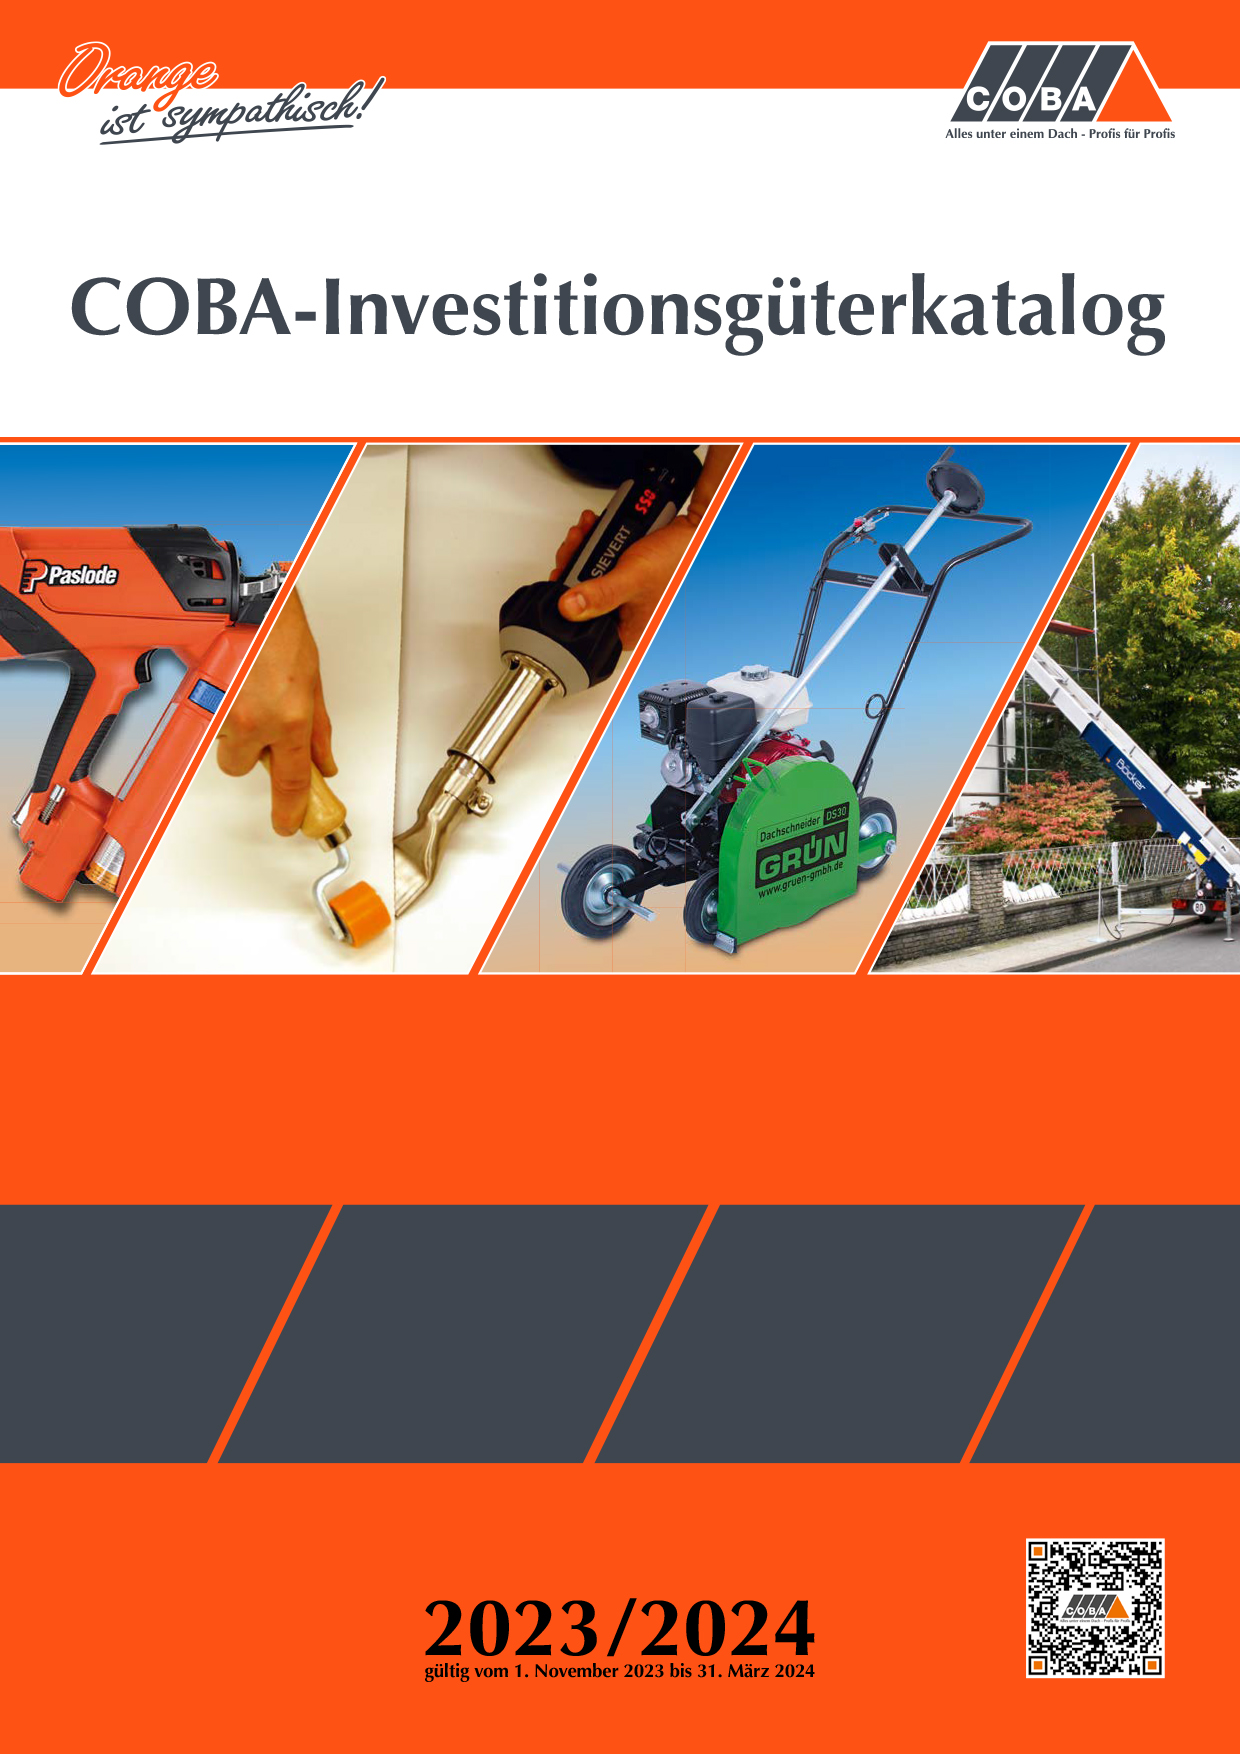 Der neue COBA-Investitionsgüterkatalog 2023/2024